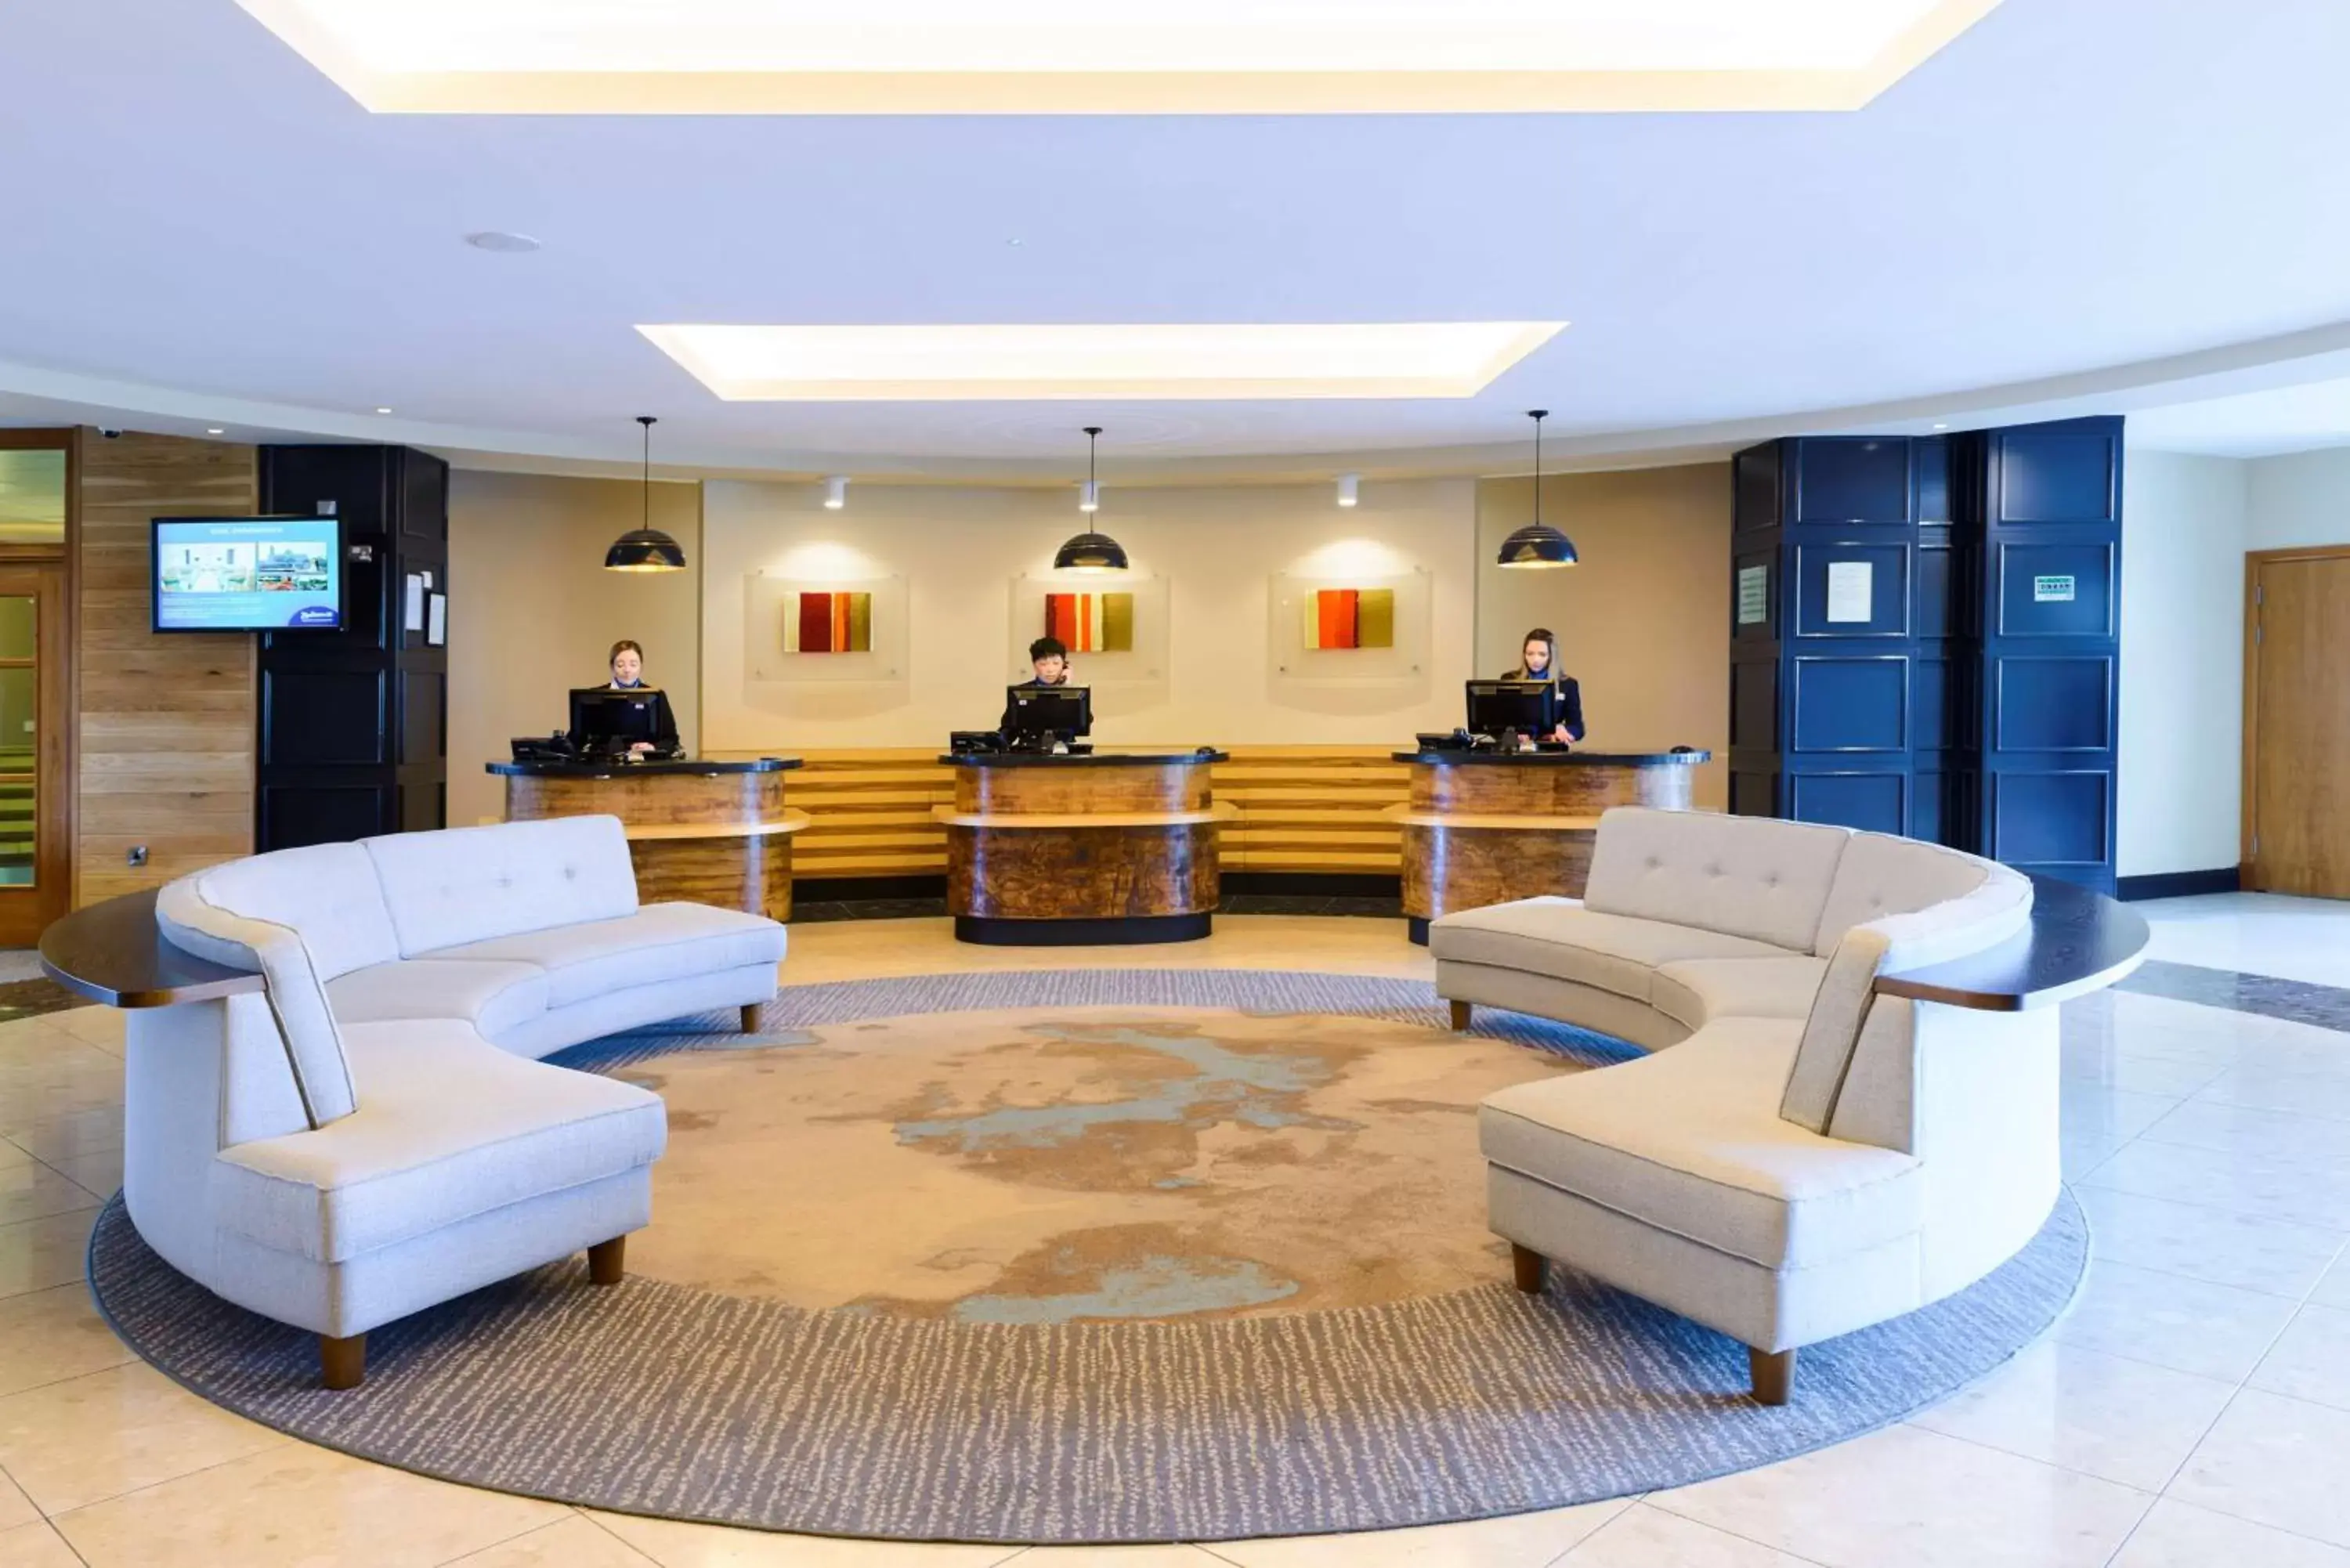 Lobby or reception, Lobby/Reception in Radisson Blu Hotel, Athlone